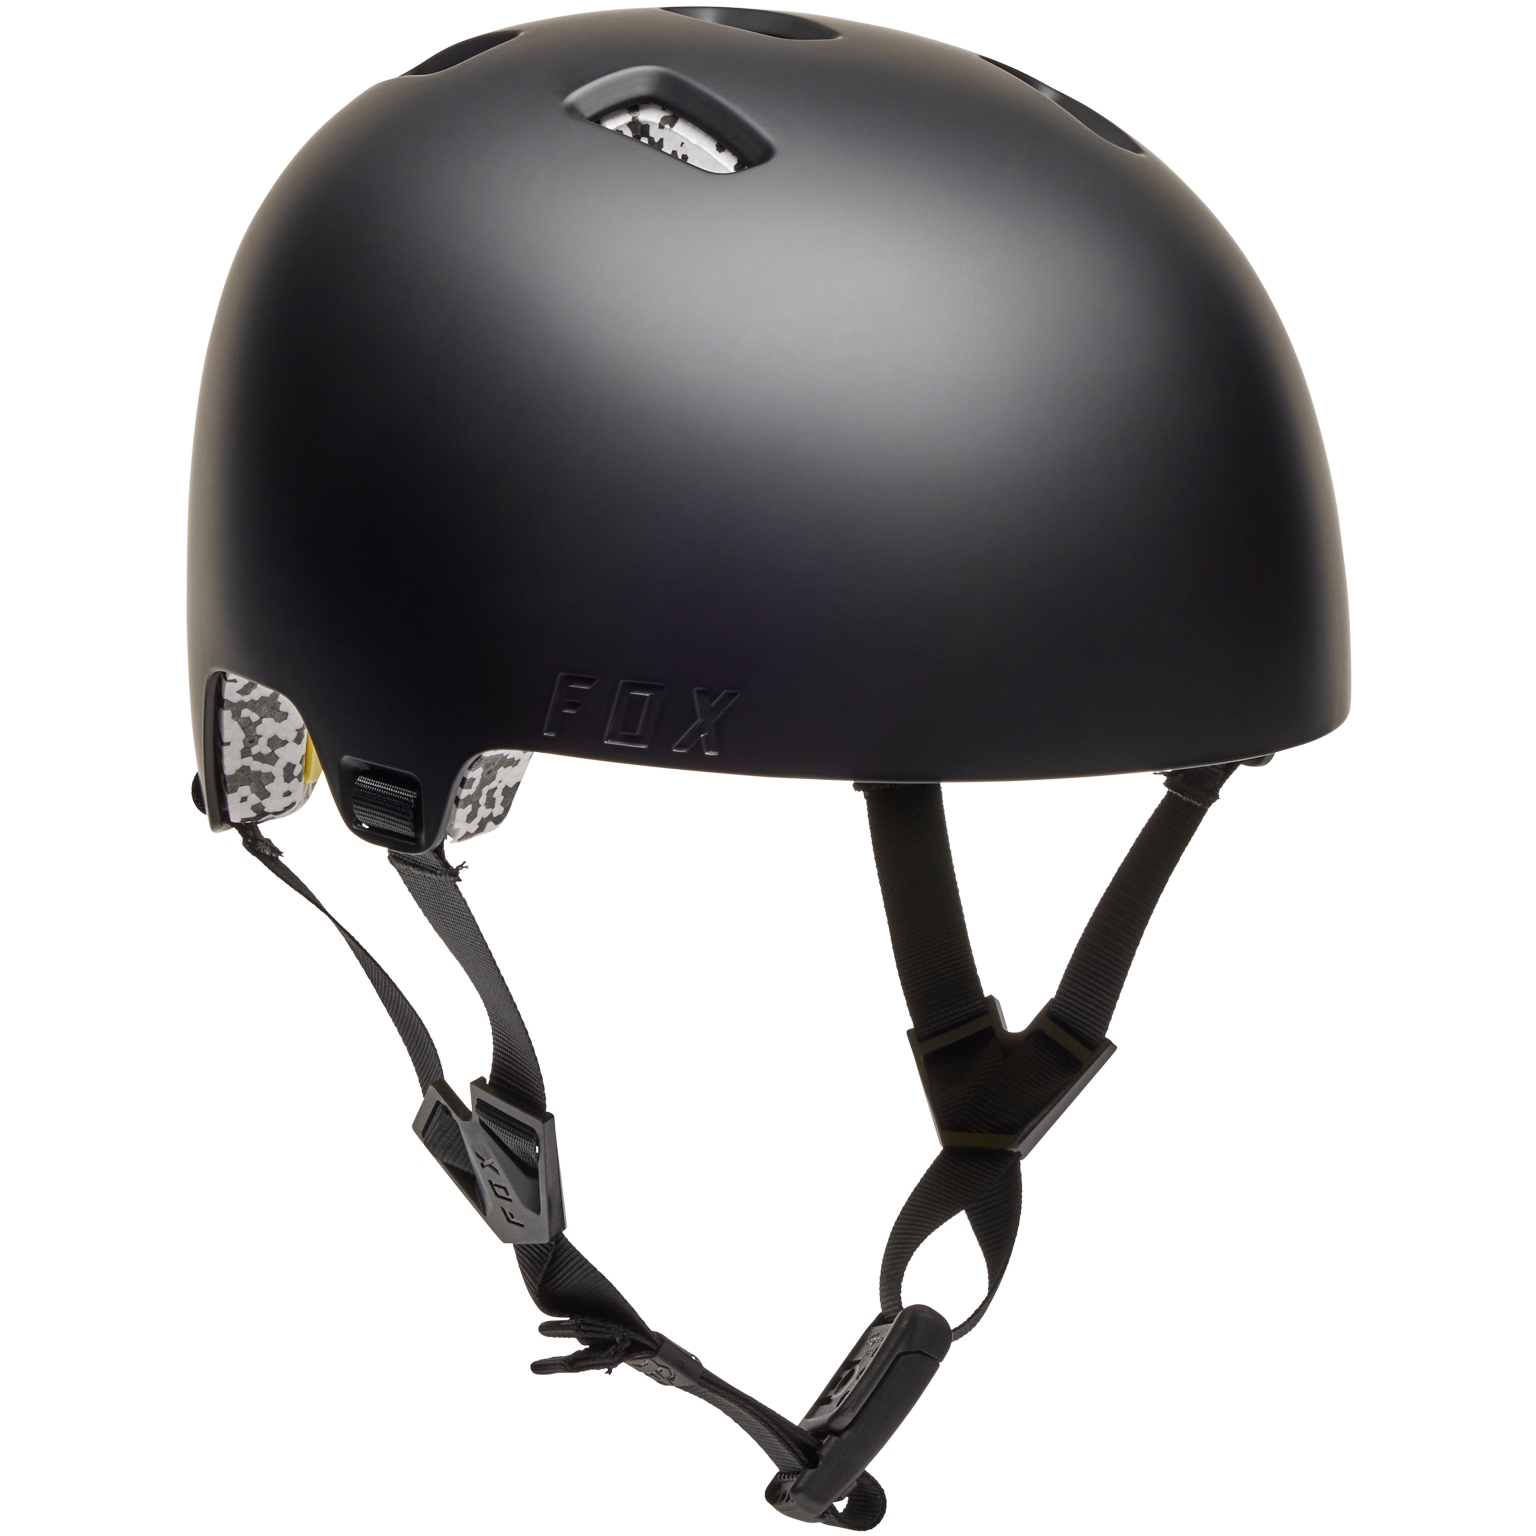 Produktbild von FOX Flight Pro MIPS Helm - schwarz